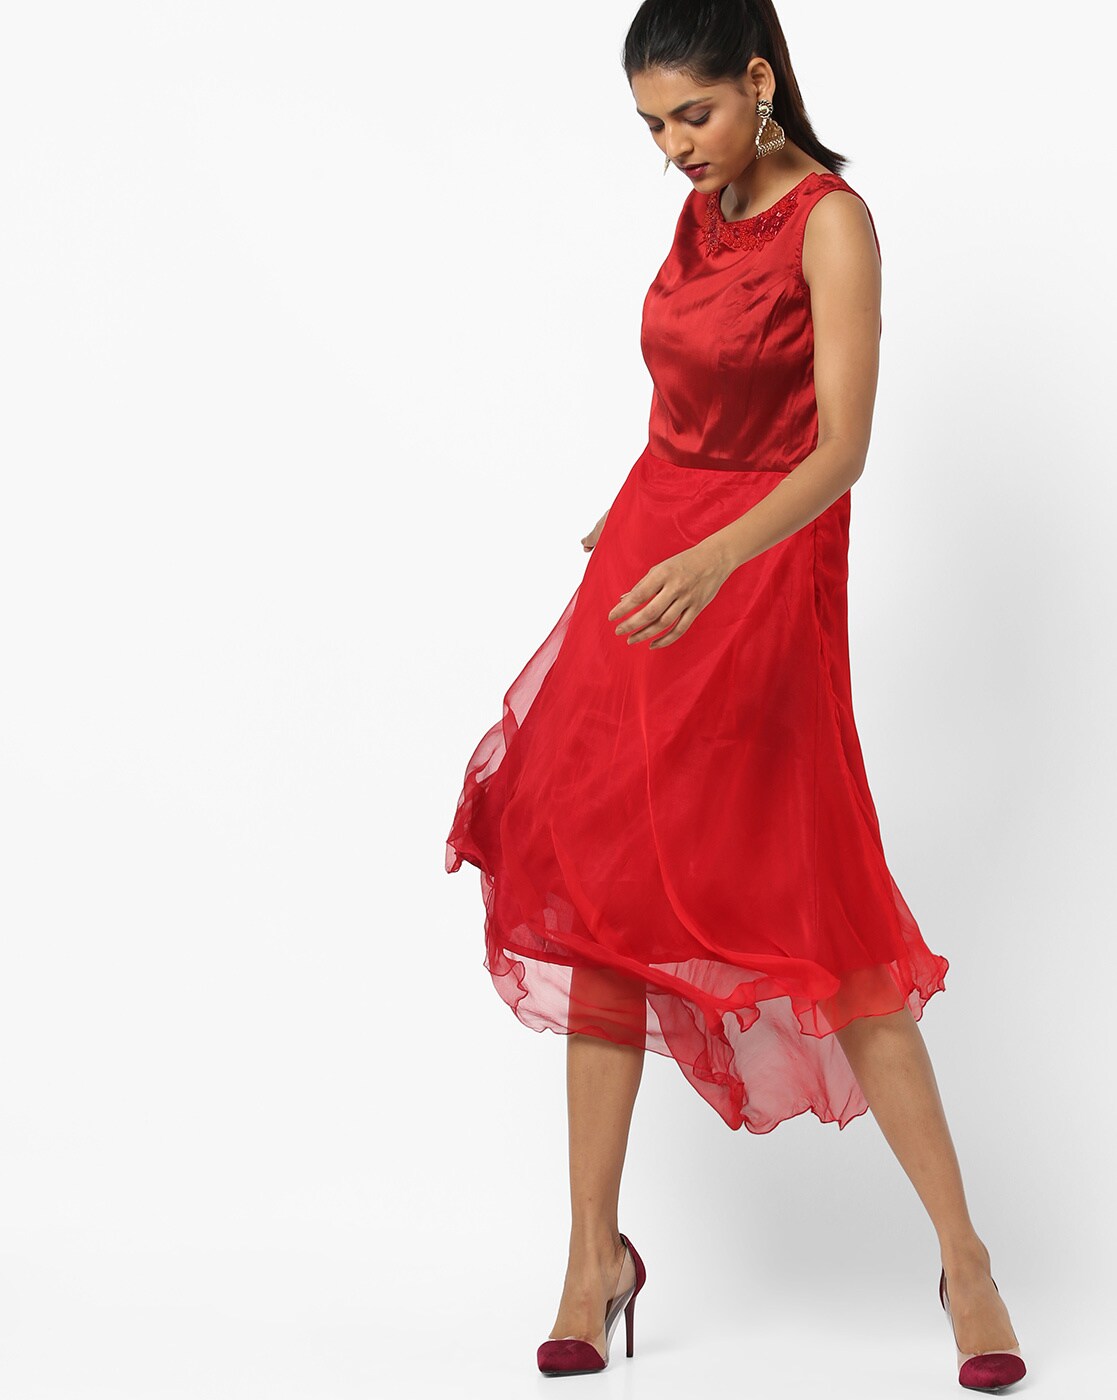 ajio red dress